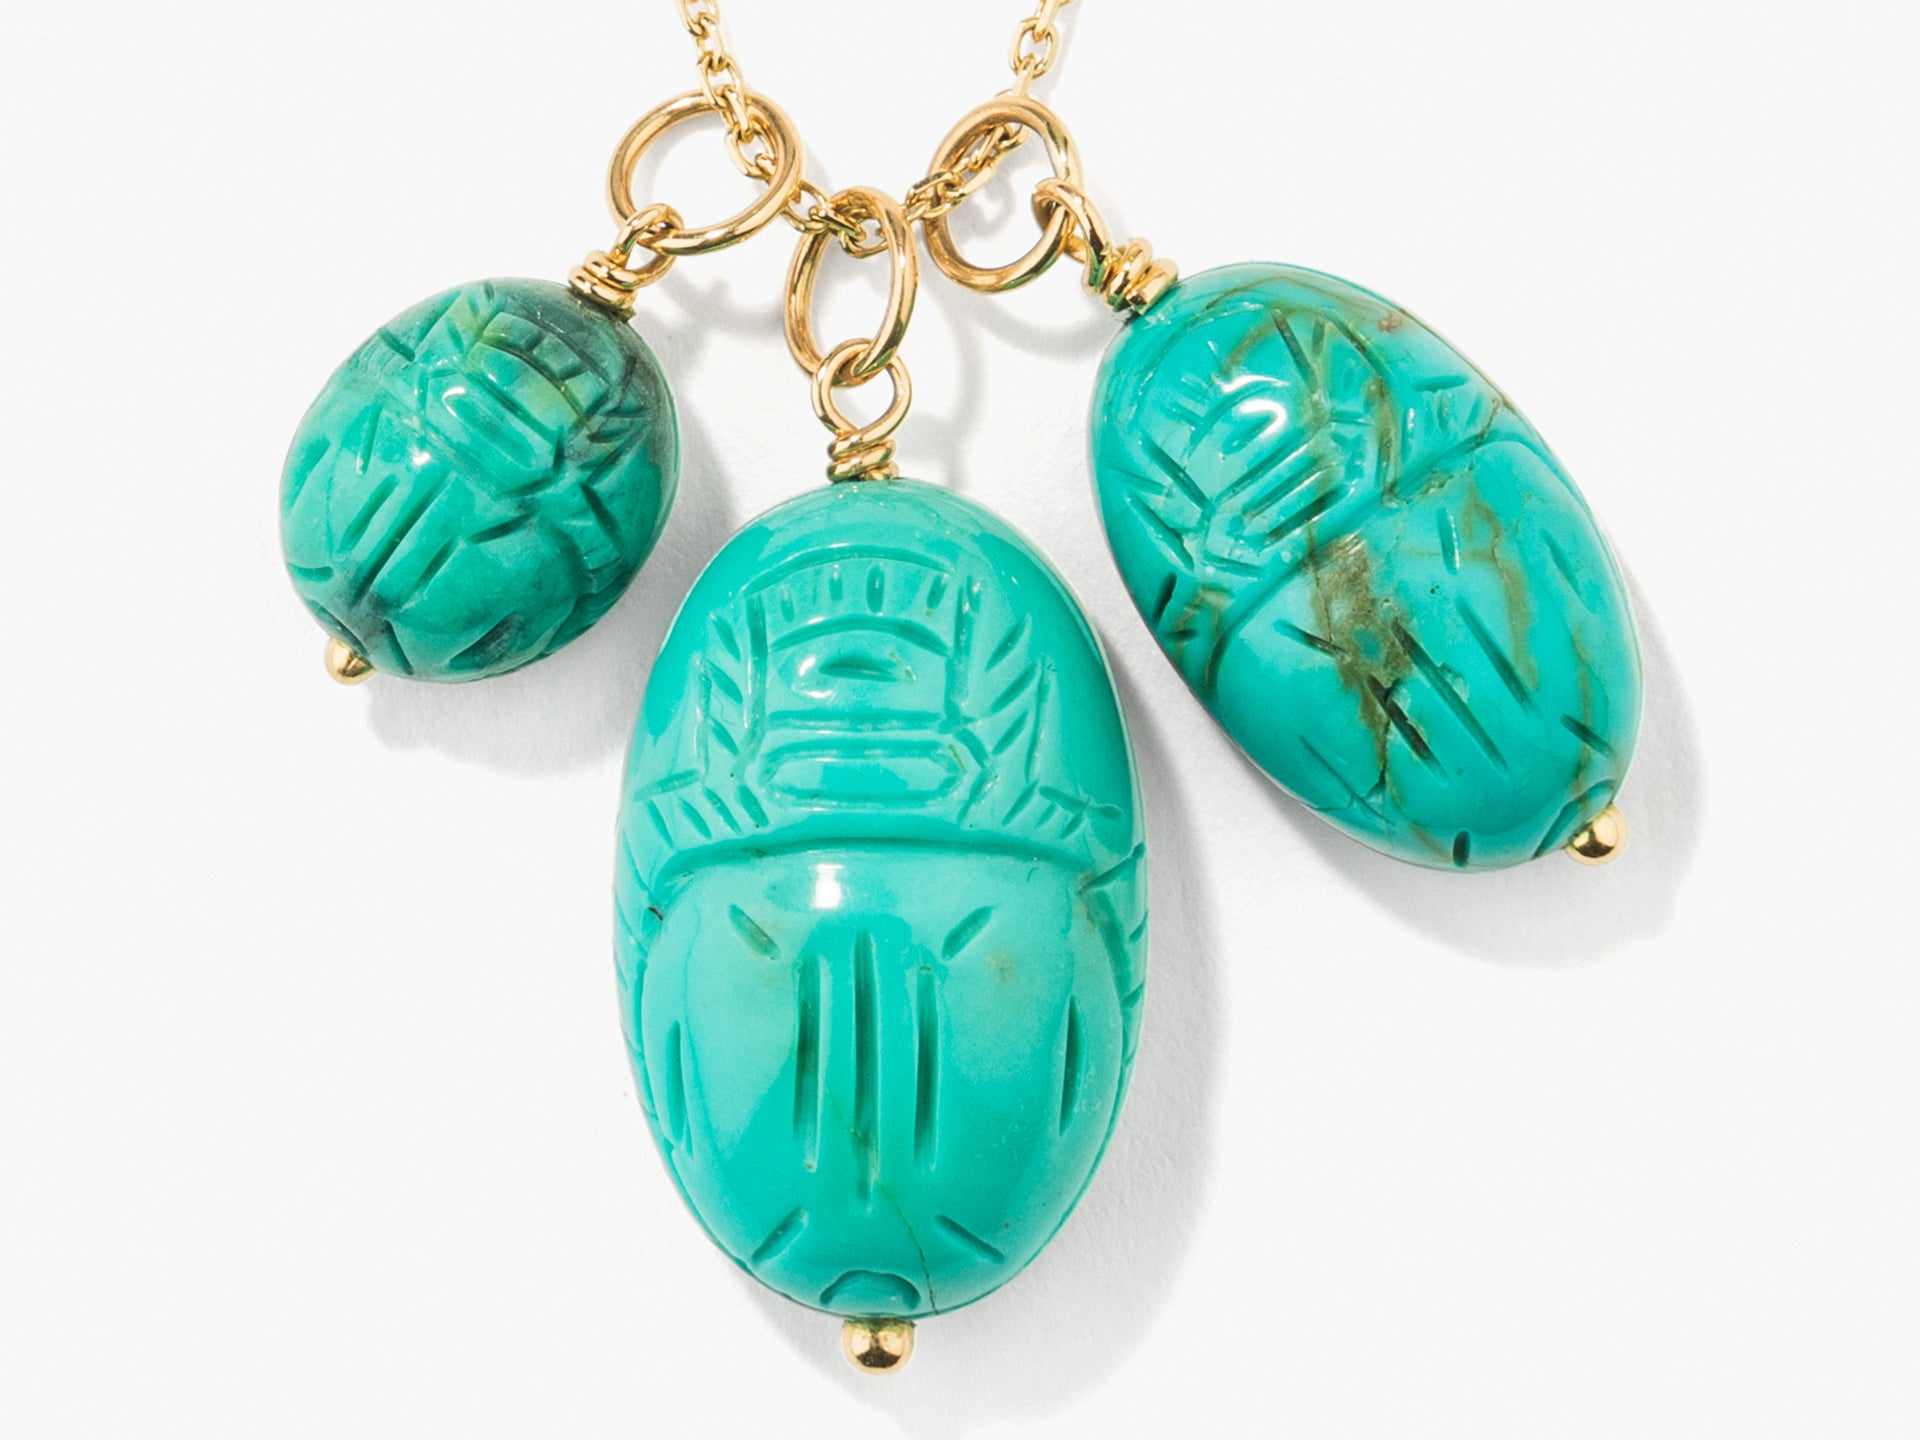 Medium turquoise scarab pendant